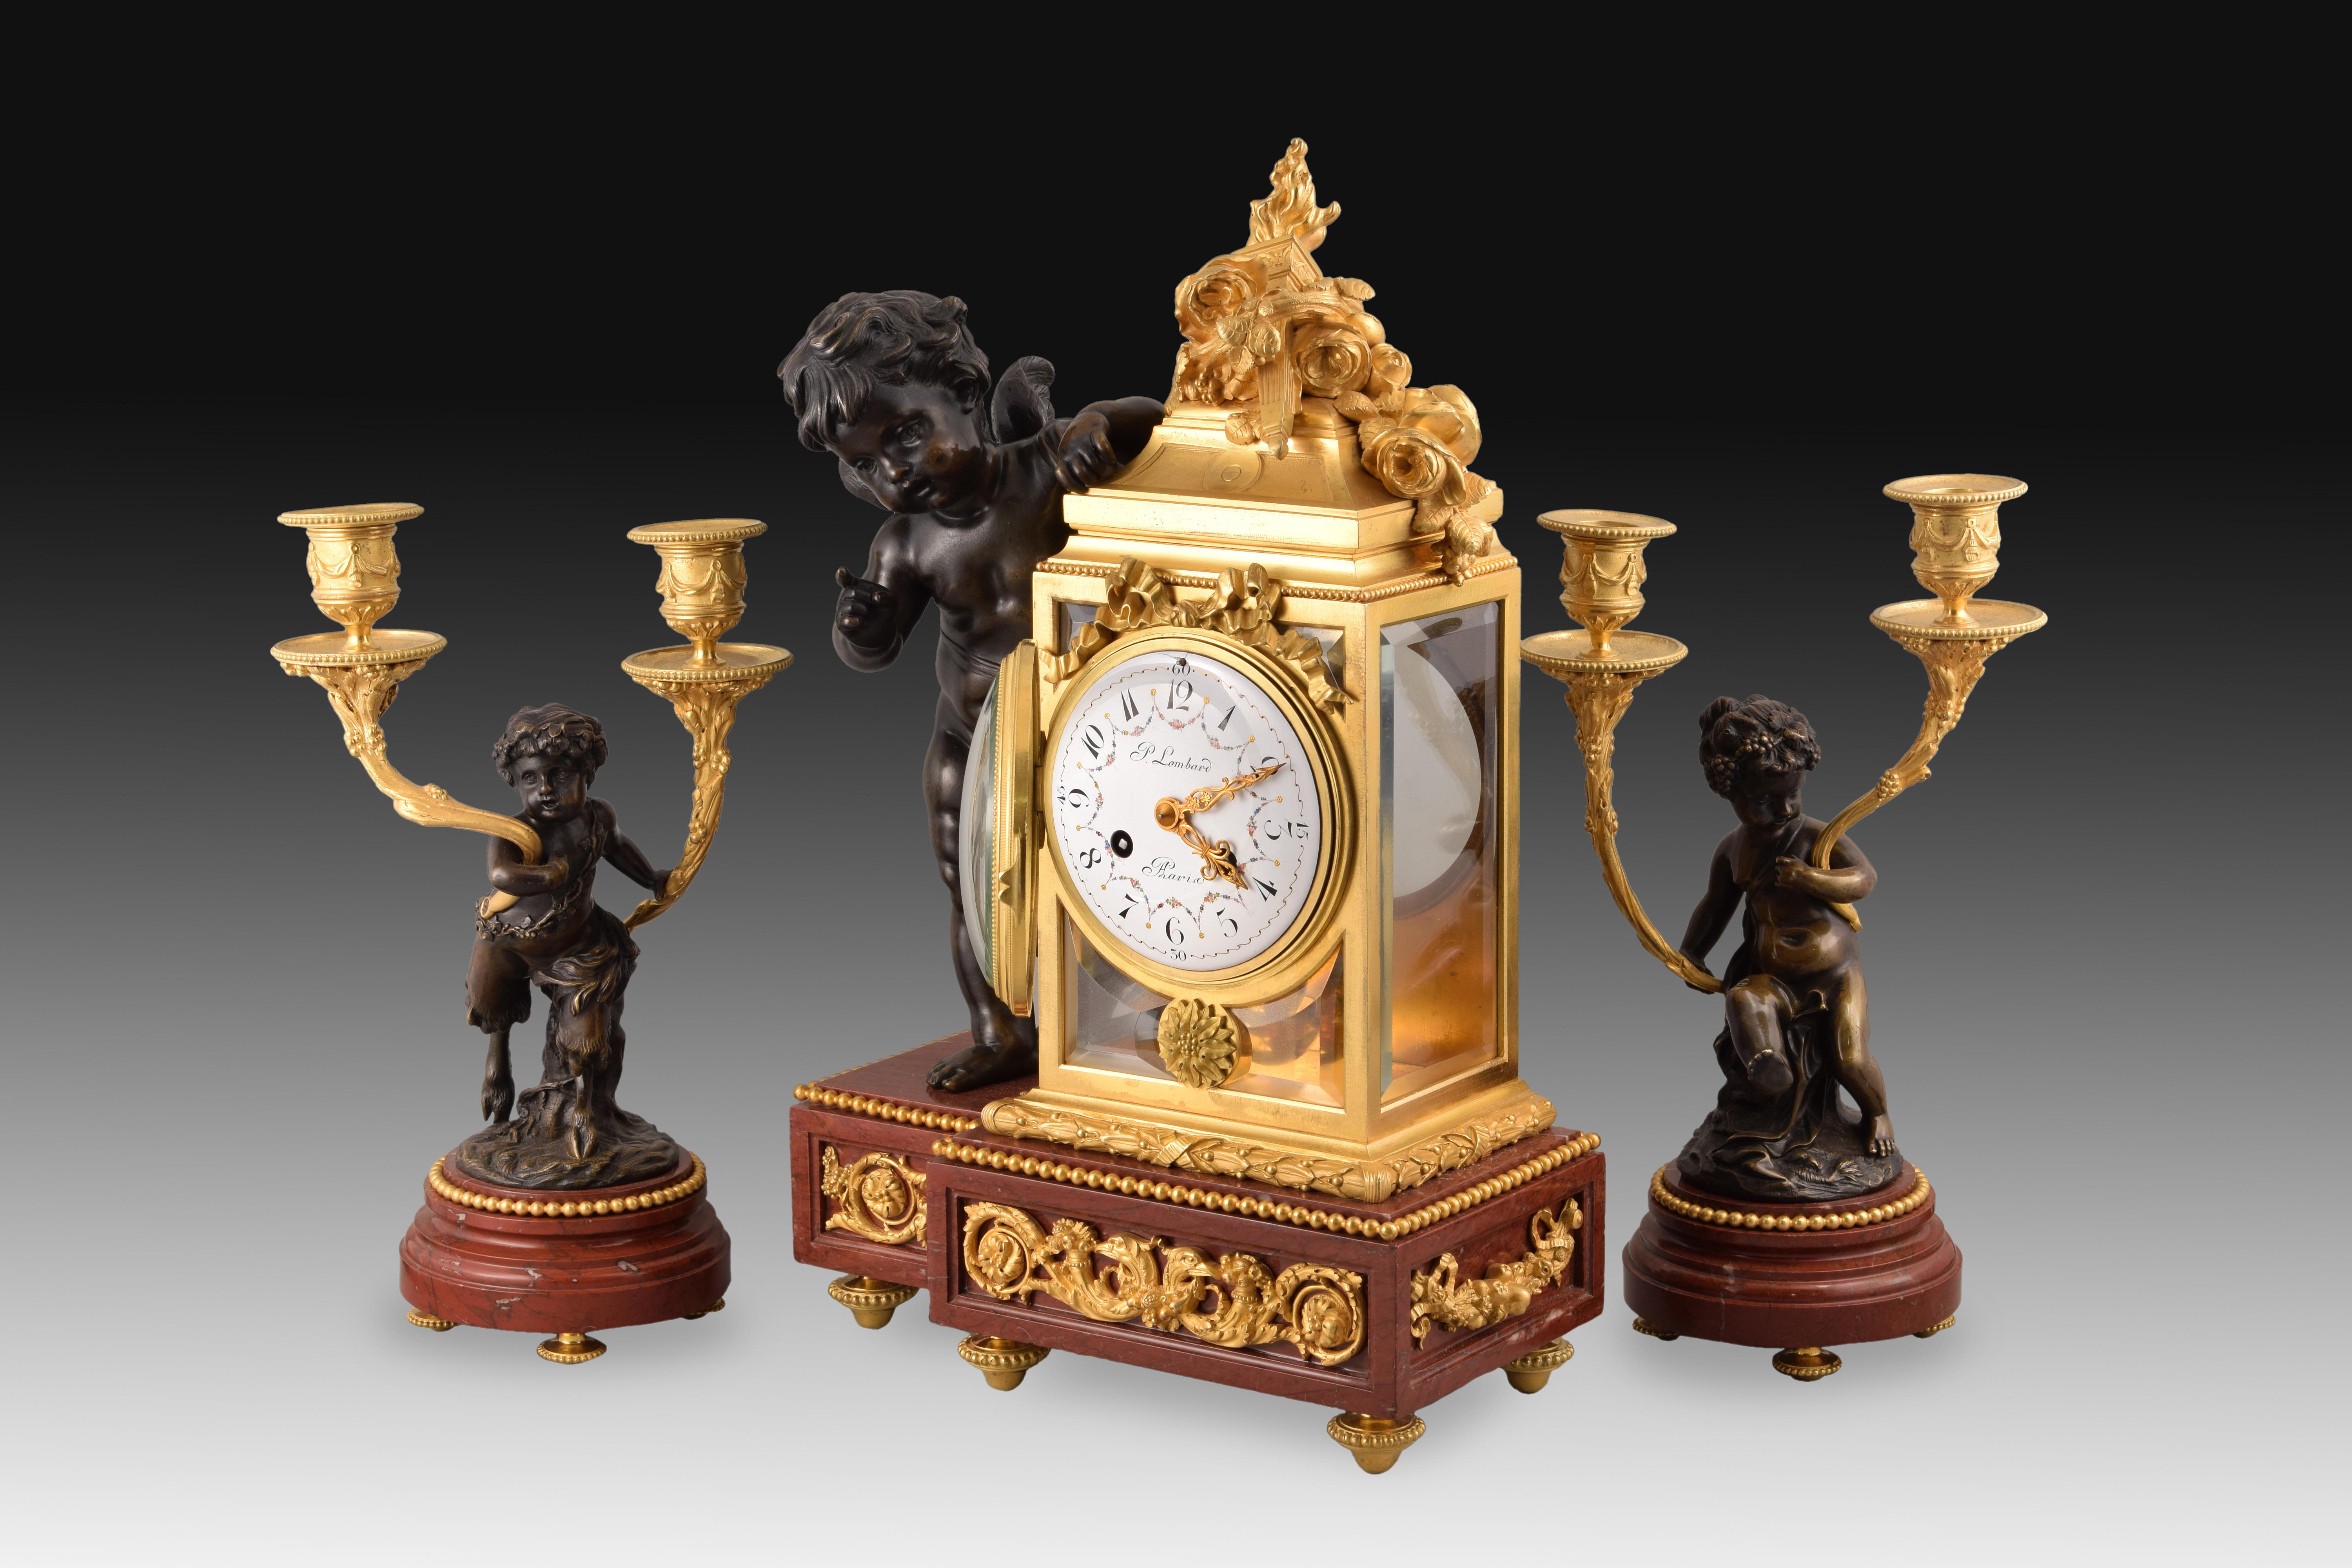 Garniture d'horloge et deux chandeliers. Bronze, marbre rouge griotte. France, 19ème siècle, suivant les modèles de Clodion. 
Ensemble ou garniture composé d'une horloge de table et de deux chandeliers à deux lumières chacun, en bronze bleui et